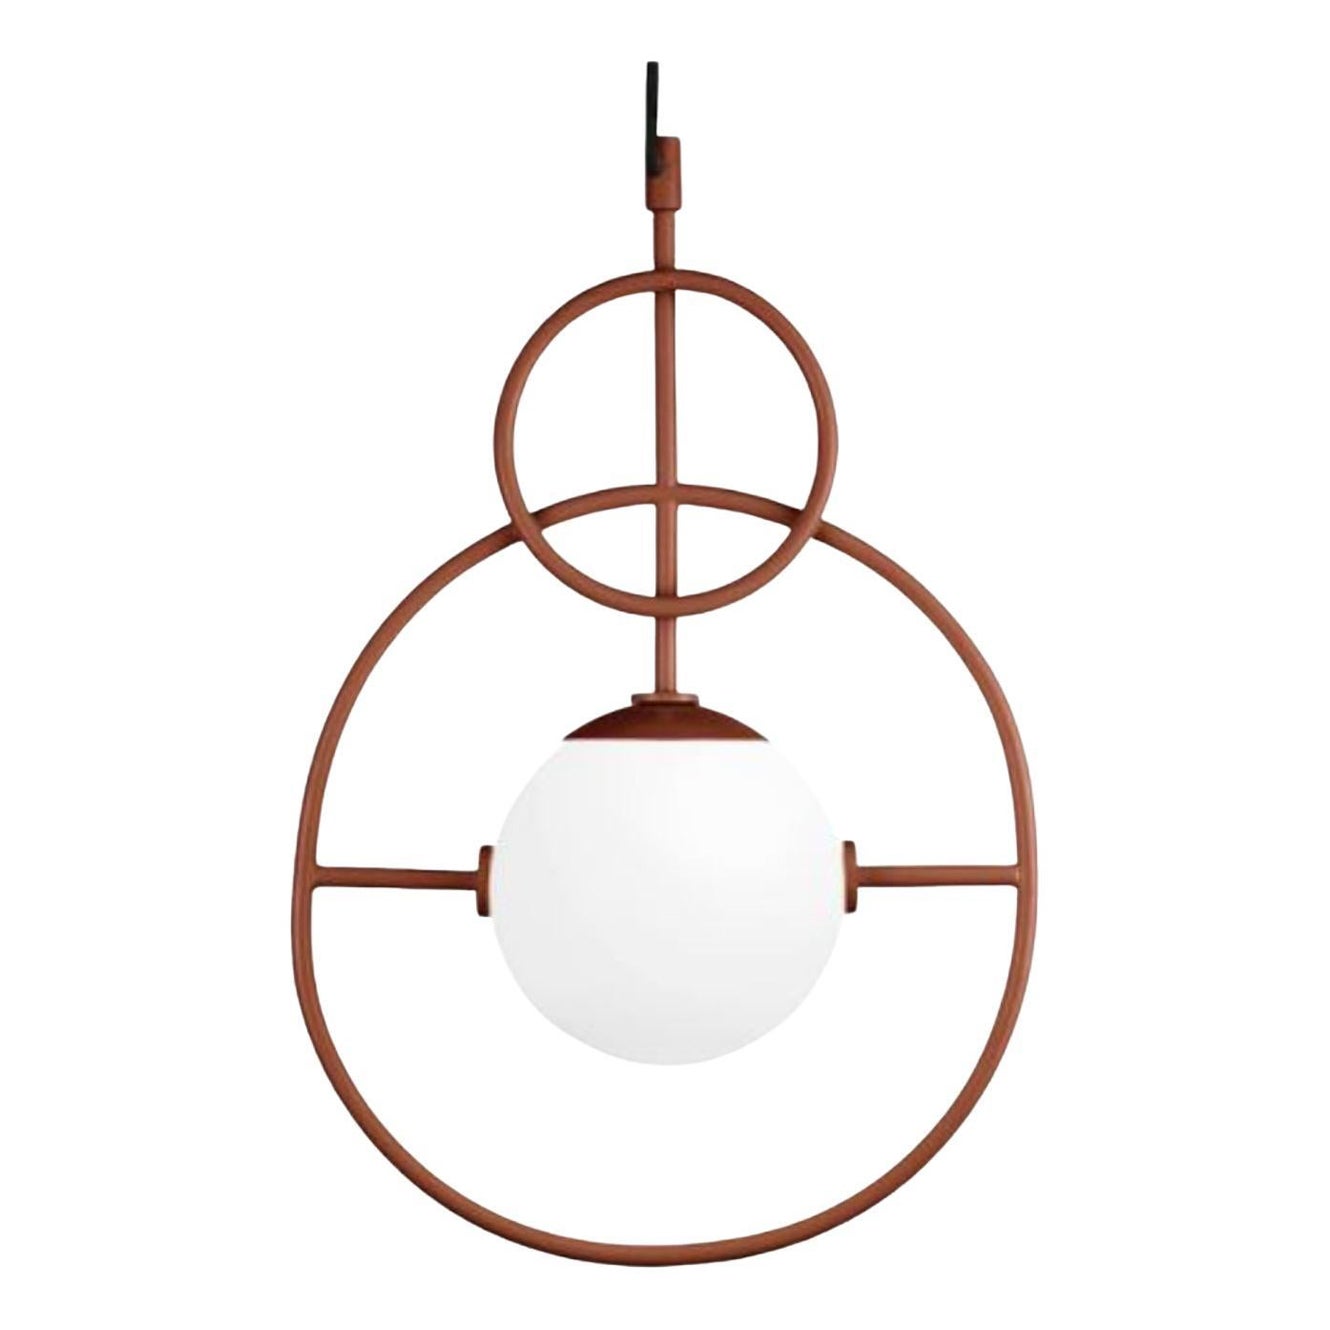 Copper Loop II Suspension Lamp by Dooq